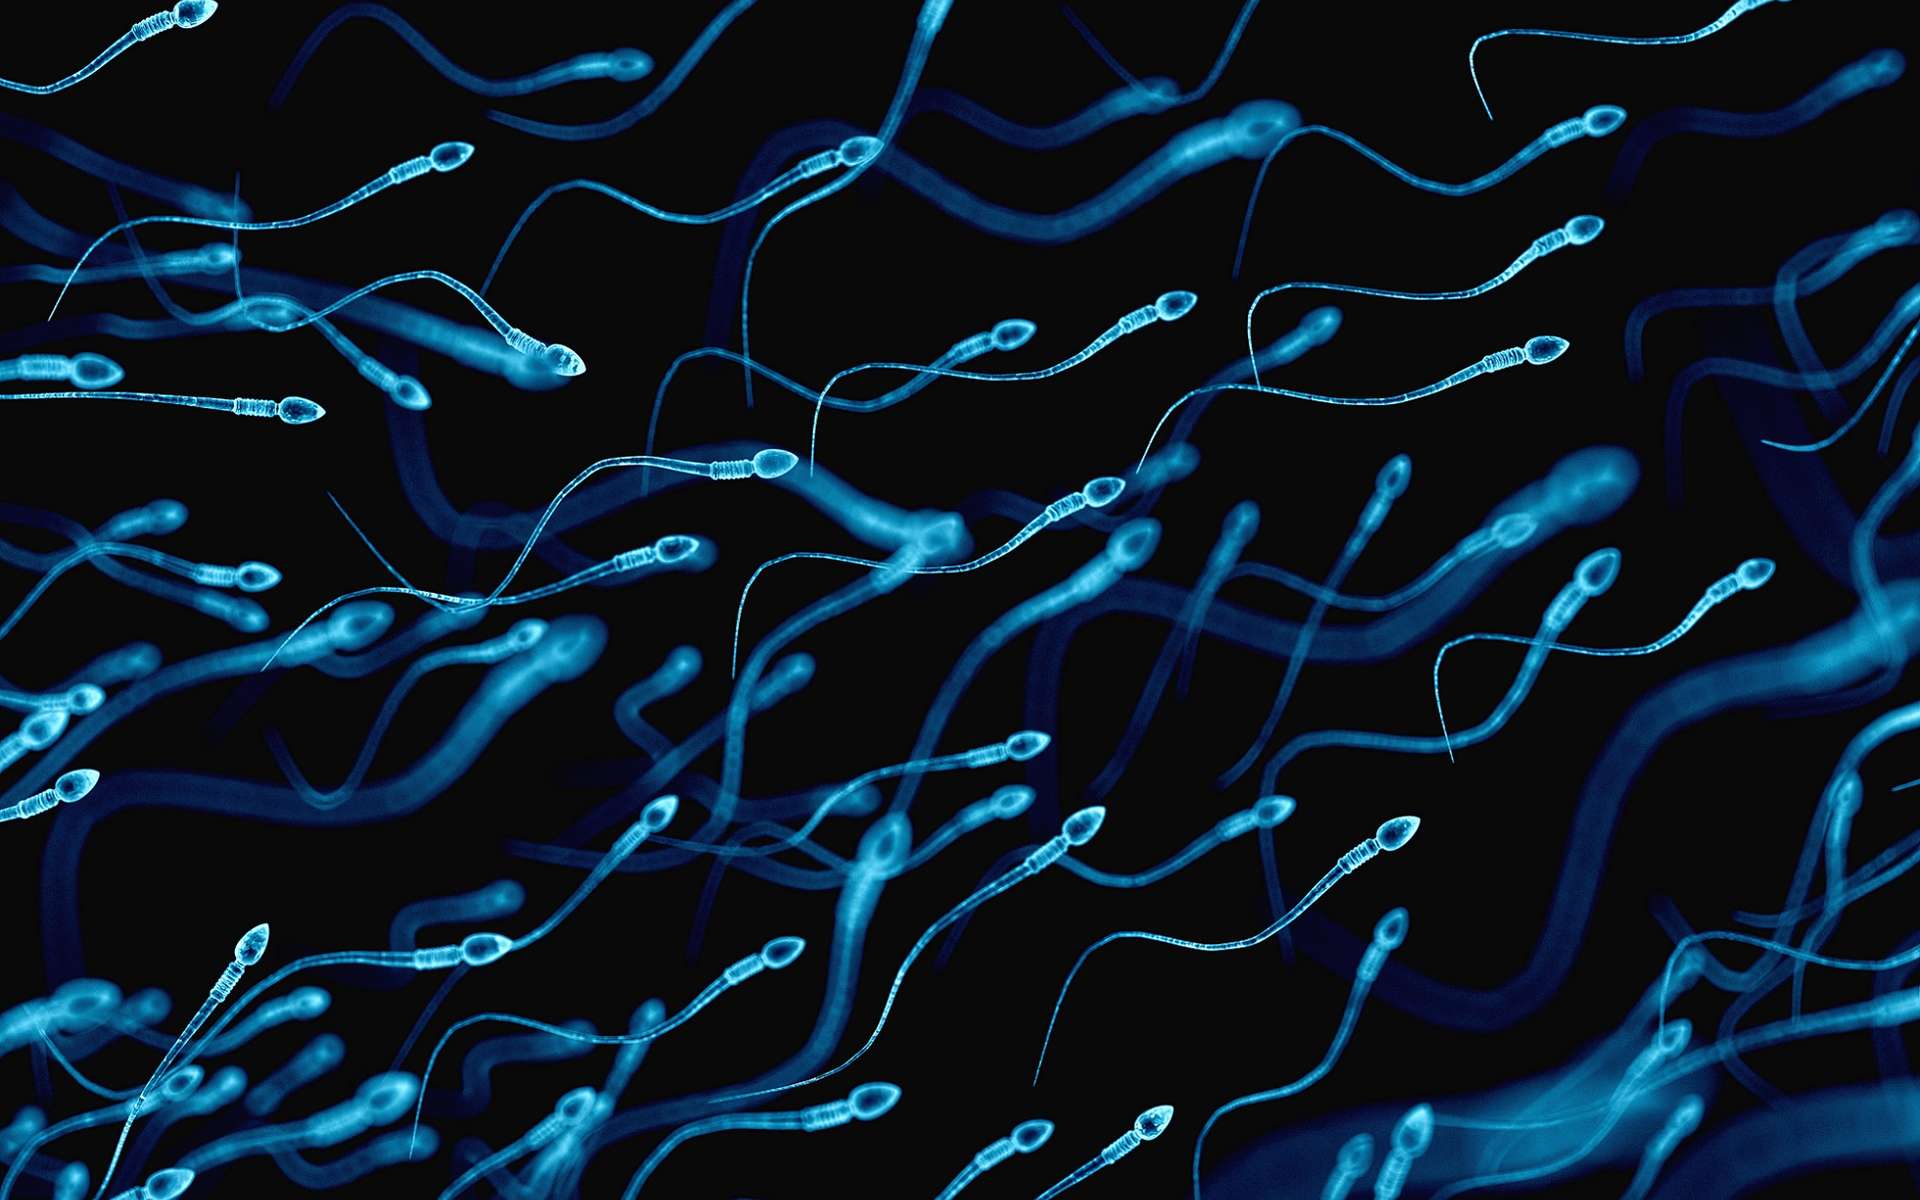 Le canal déférent sert à transporter les spermatozoïdes de l’épididyme vers l’urètre. © Sebastian Kaulitzki, Shutterstock